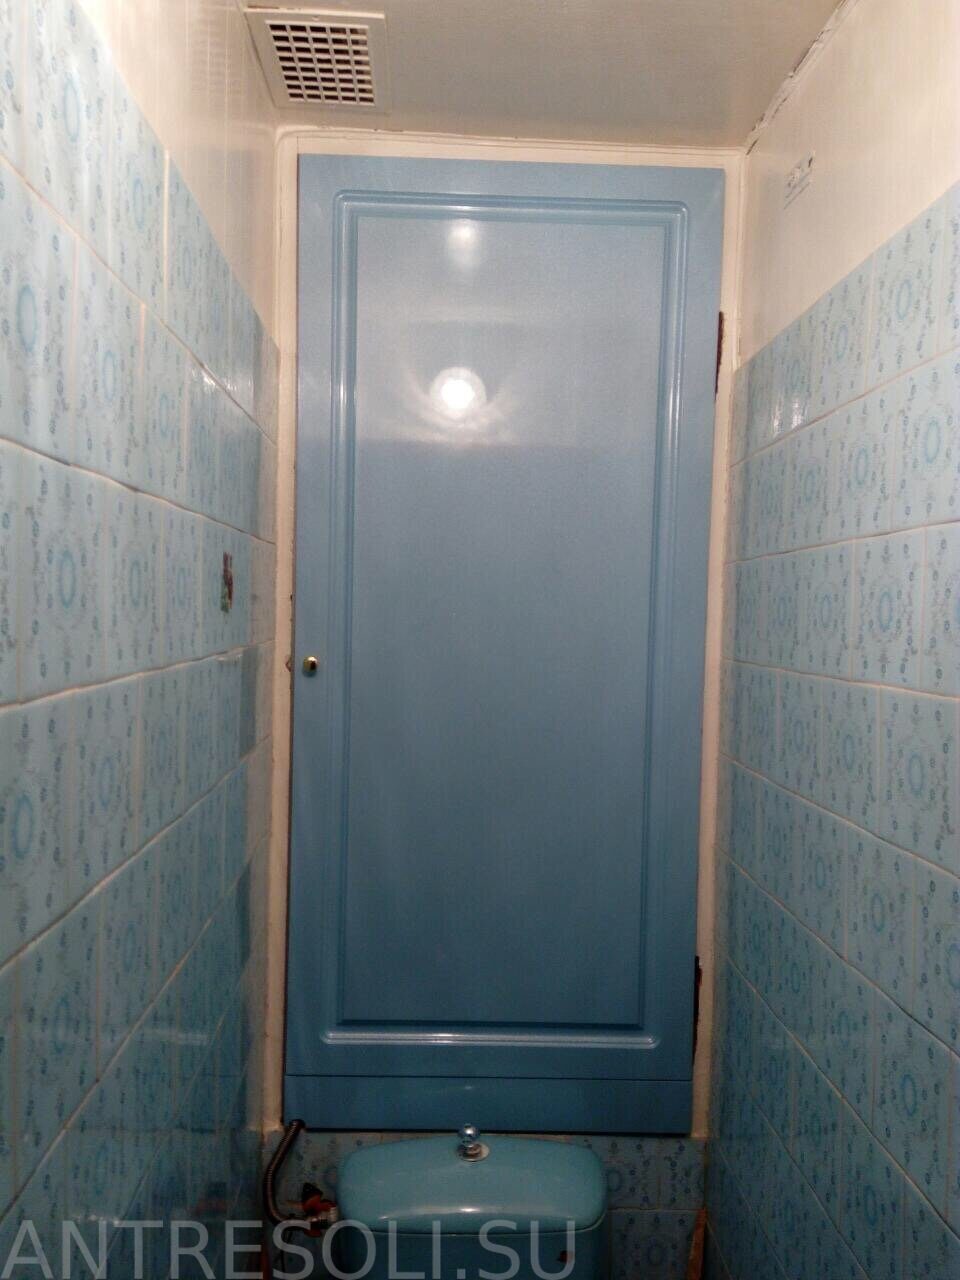 пвх дверцы для сантехнического шкафа в туалете